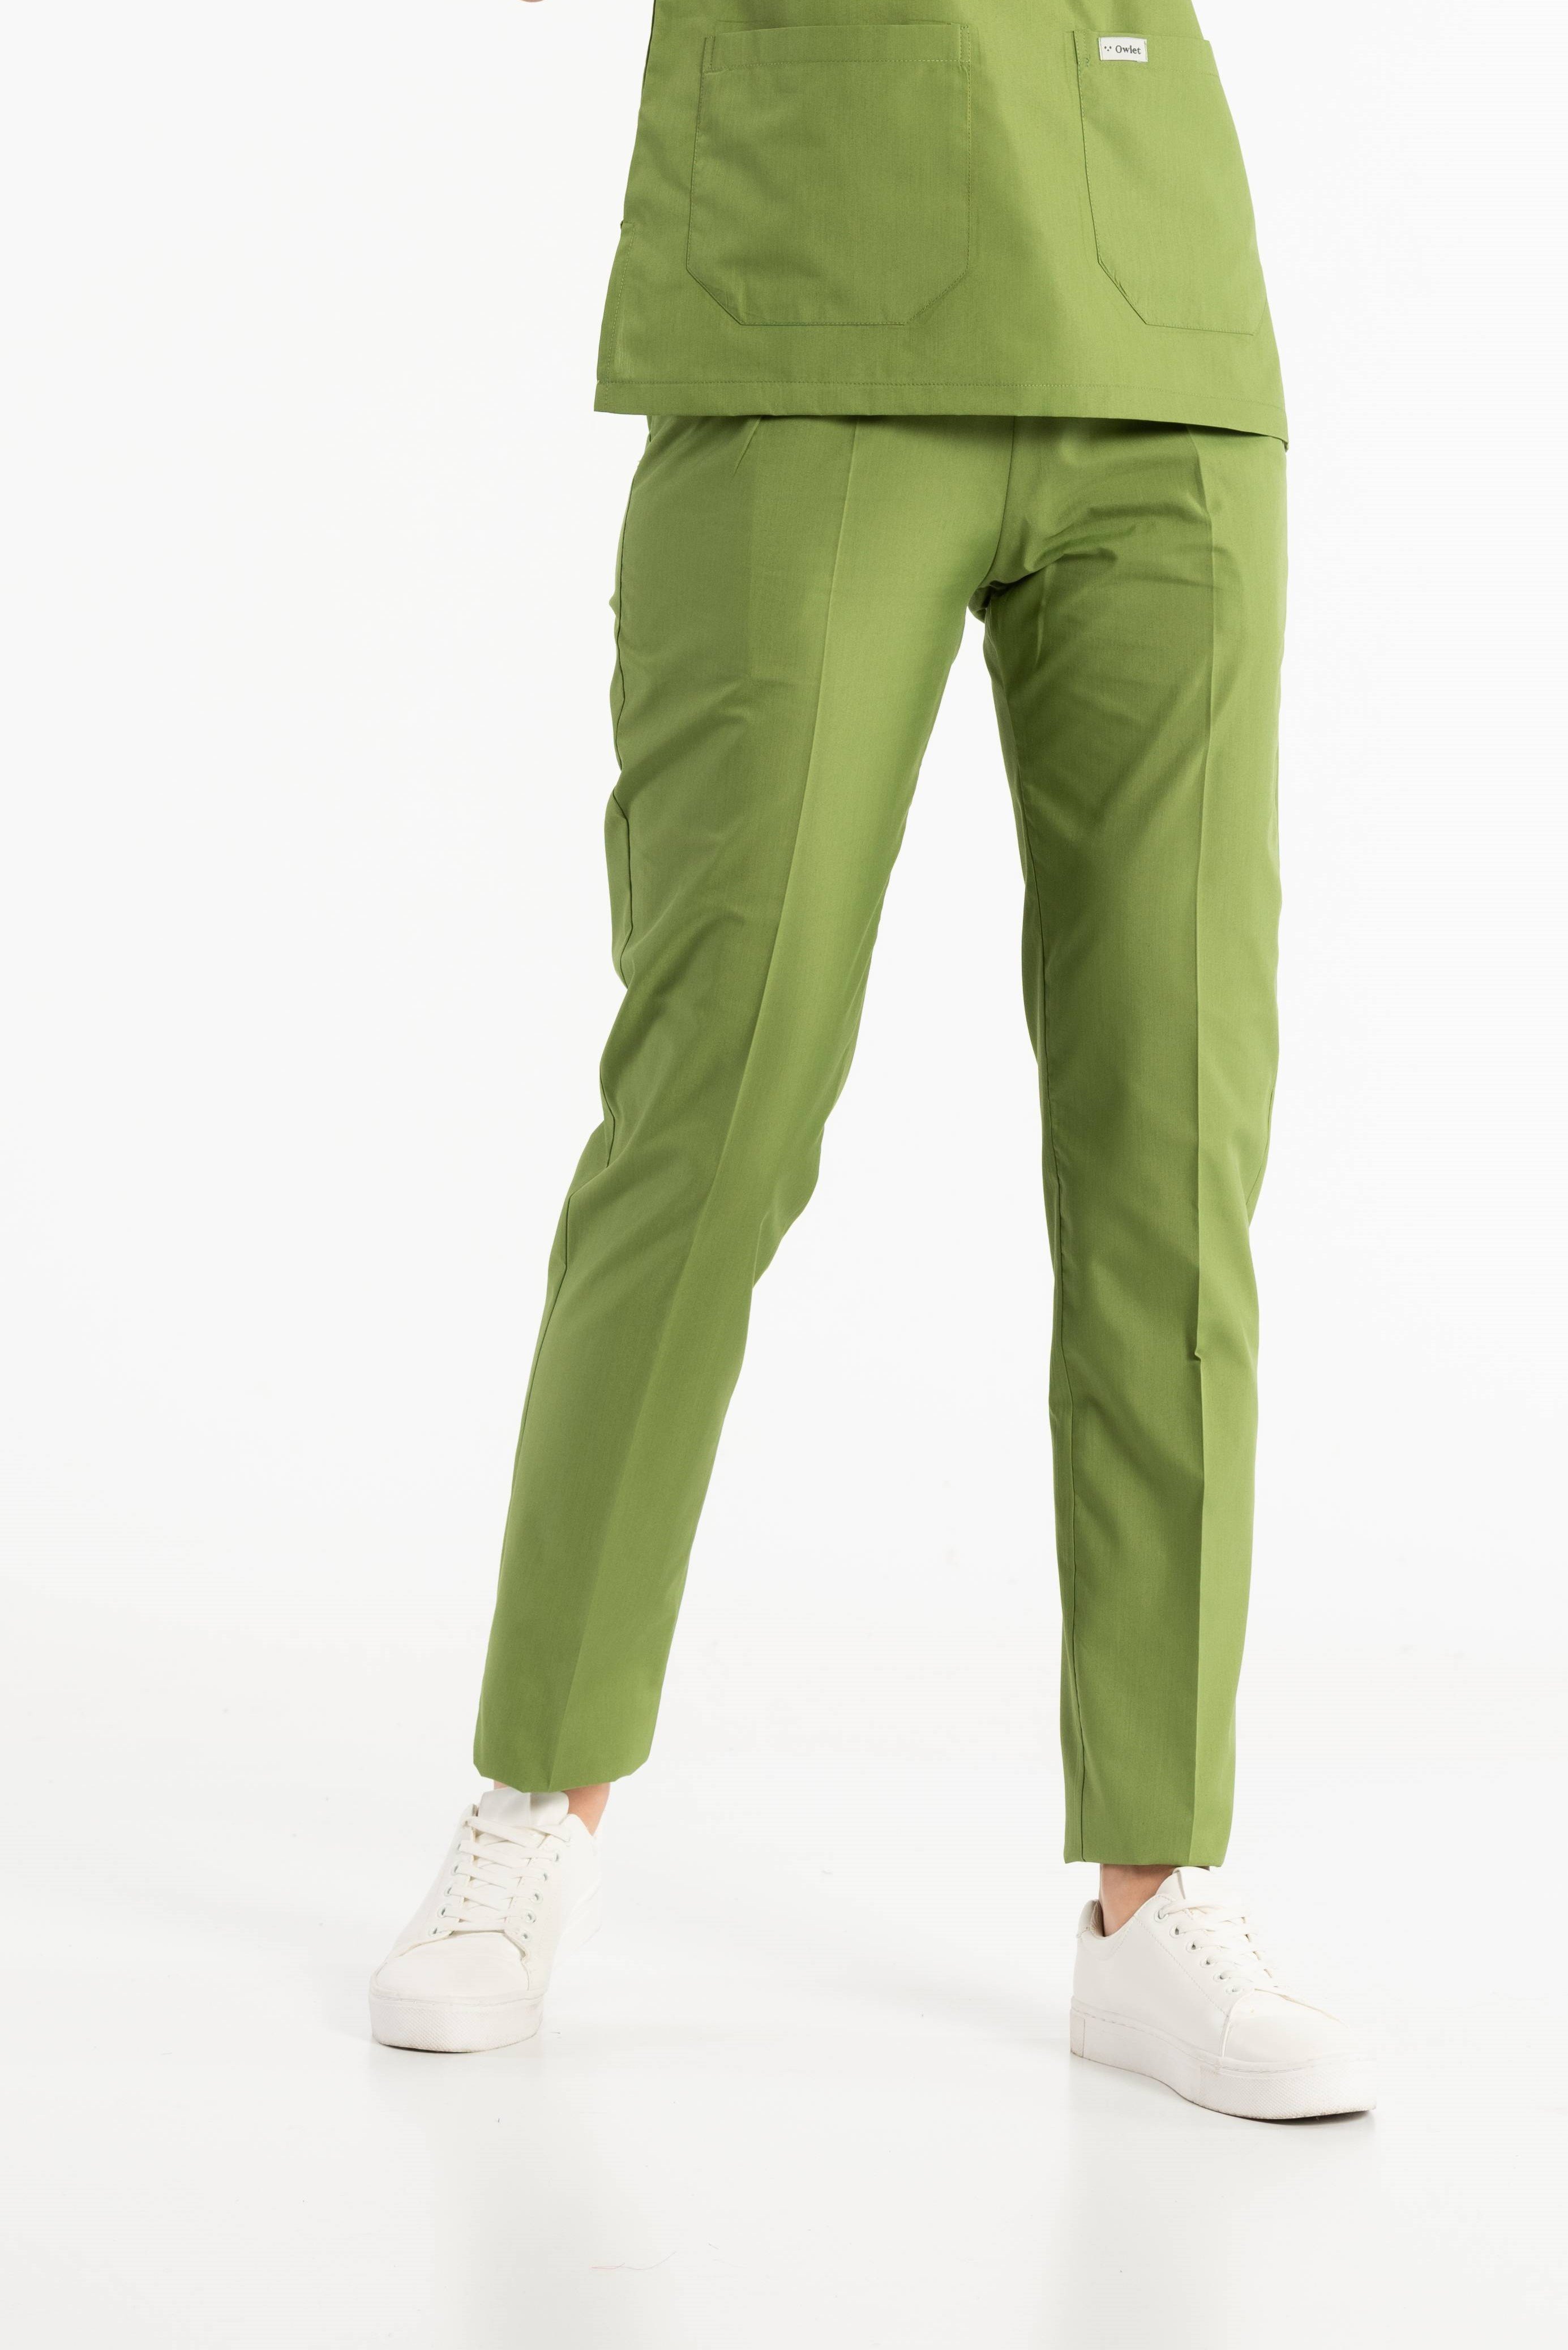 Fıstık Yeşili Cerrahi Pantolon